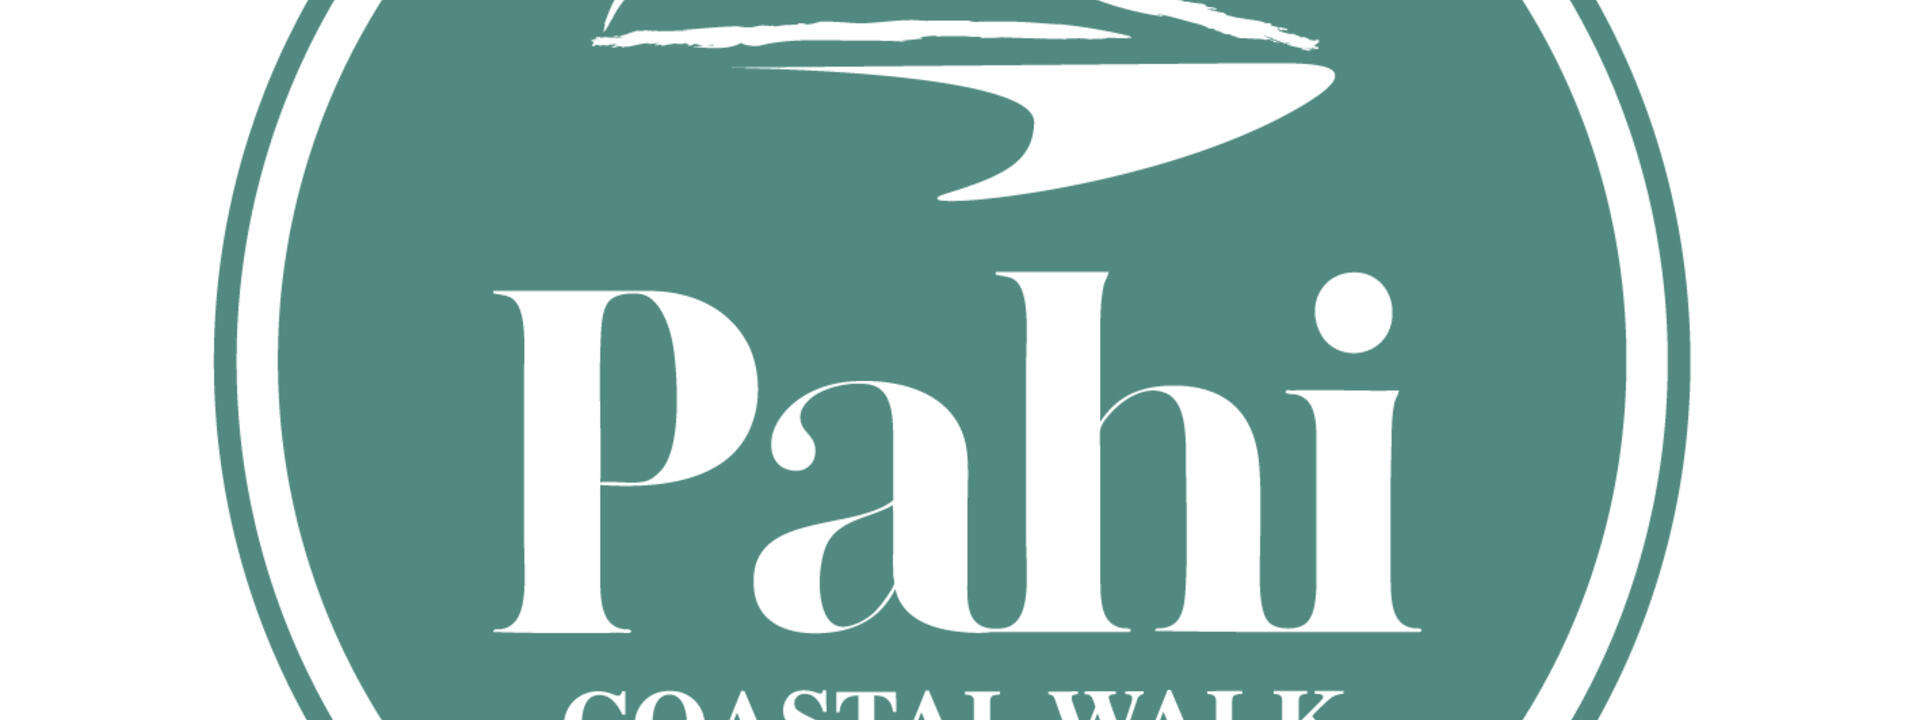 Pahi Walk logo FB.jpg